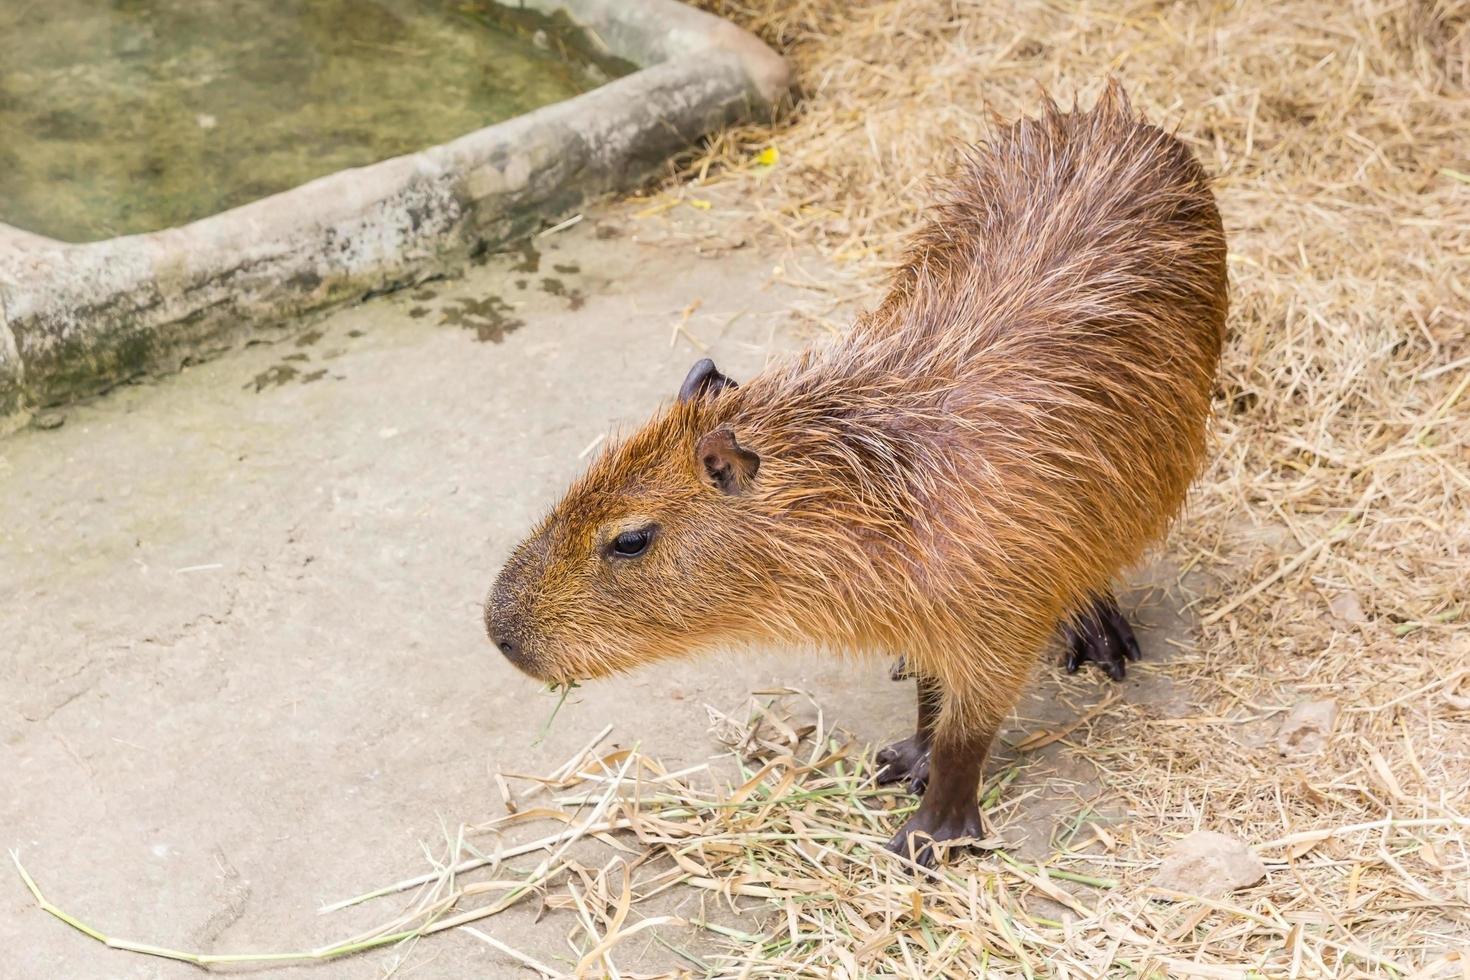 Capybara am Boden foto